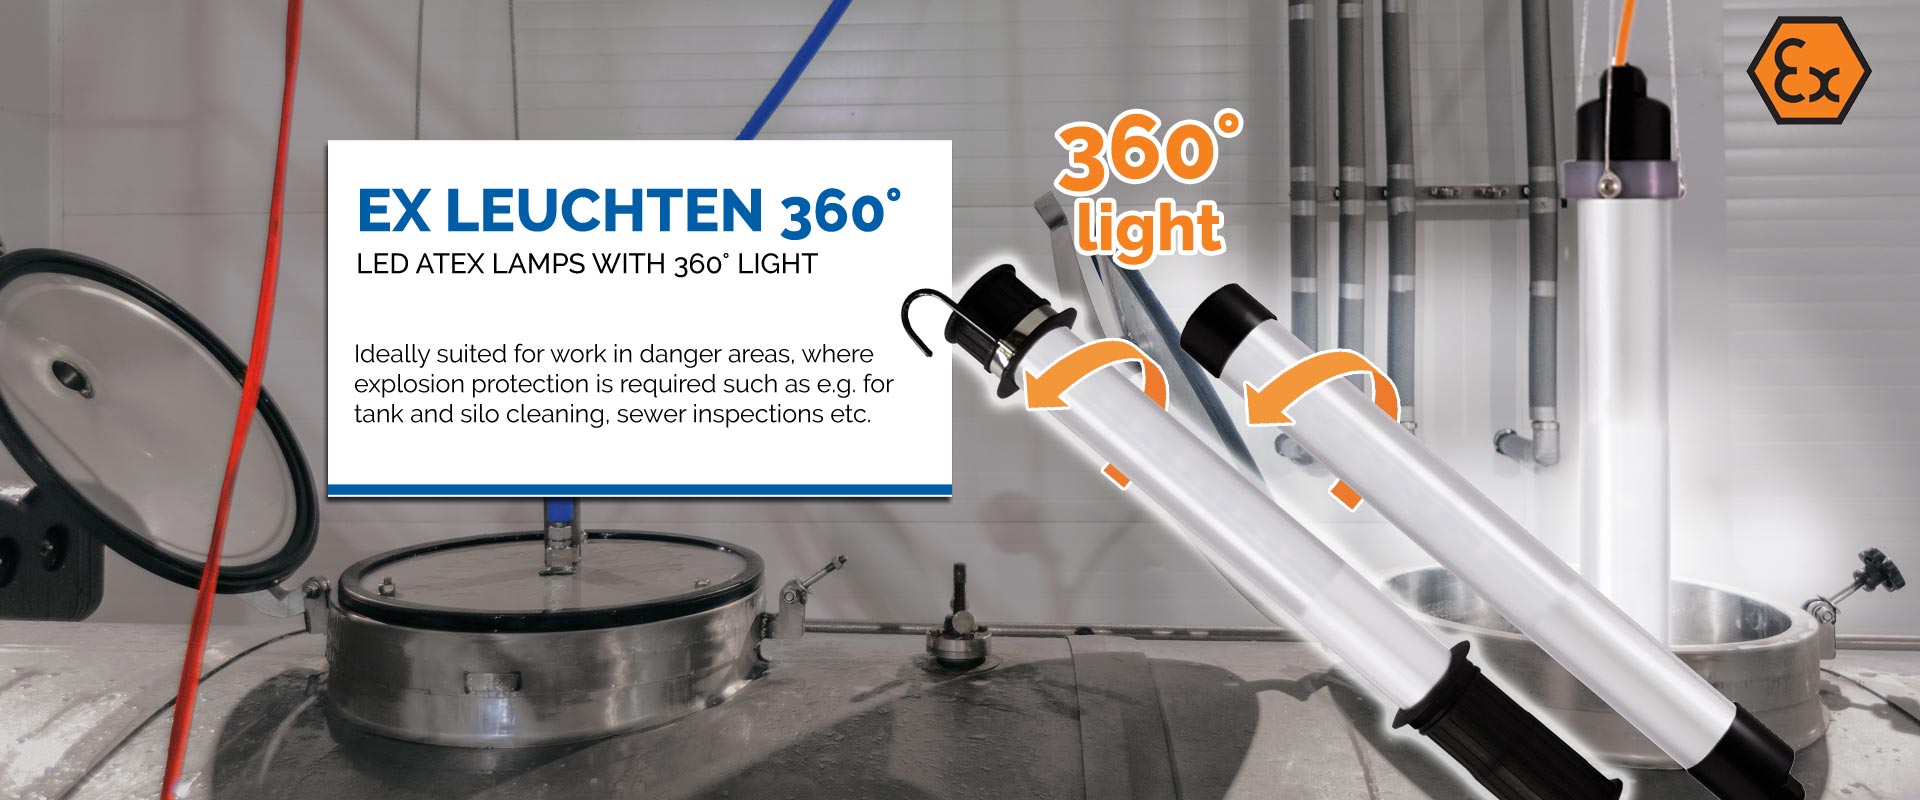 KIRA Leuchten GmbH ATEX lights lighting Manufacturer and - of Leuchten KIRA LED 